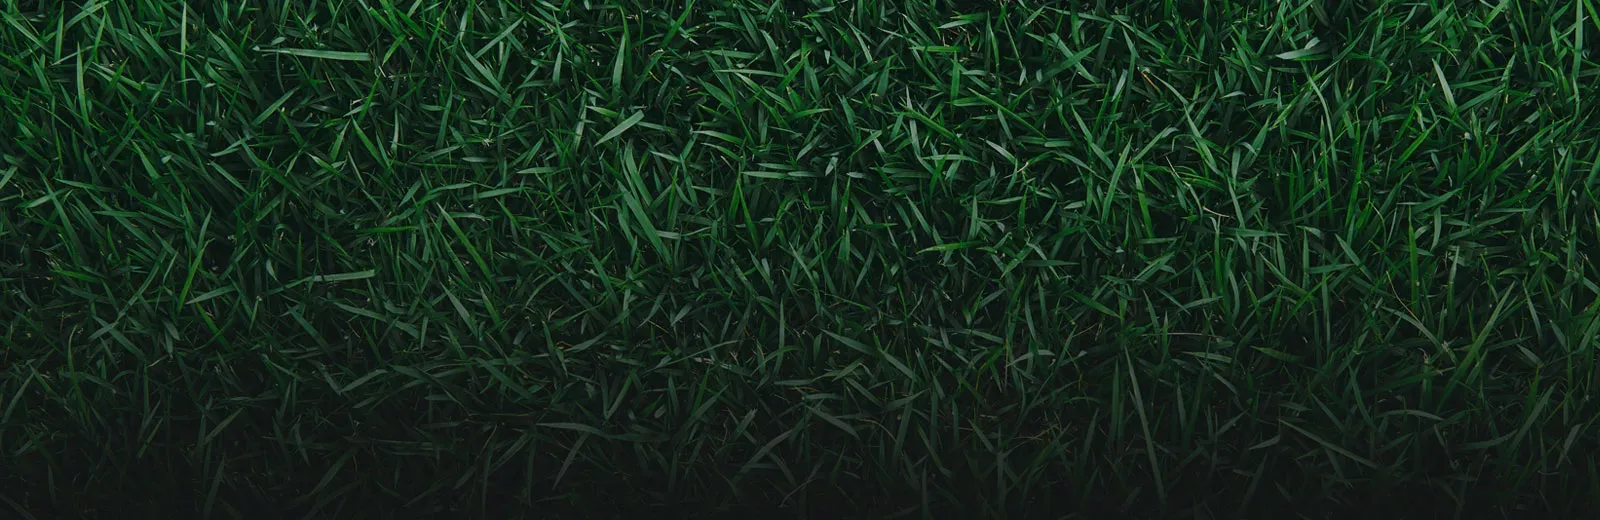 Green healthy grass